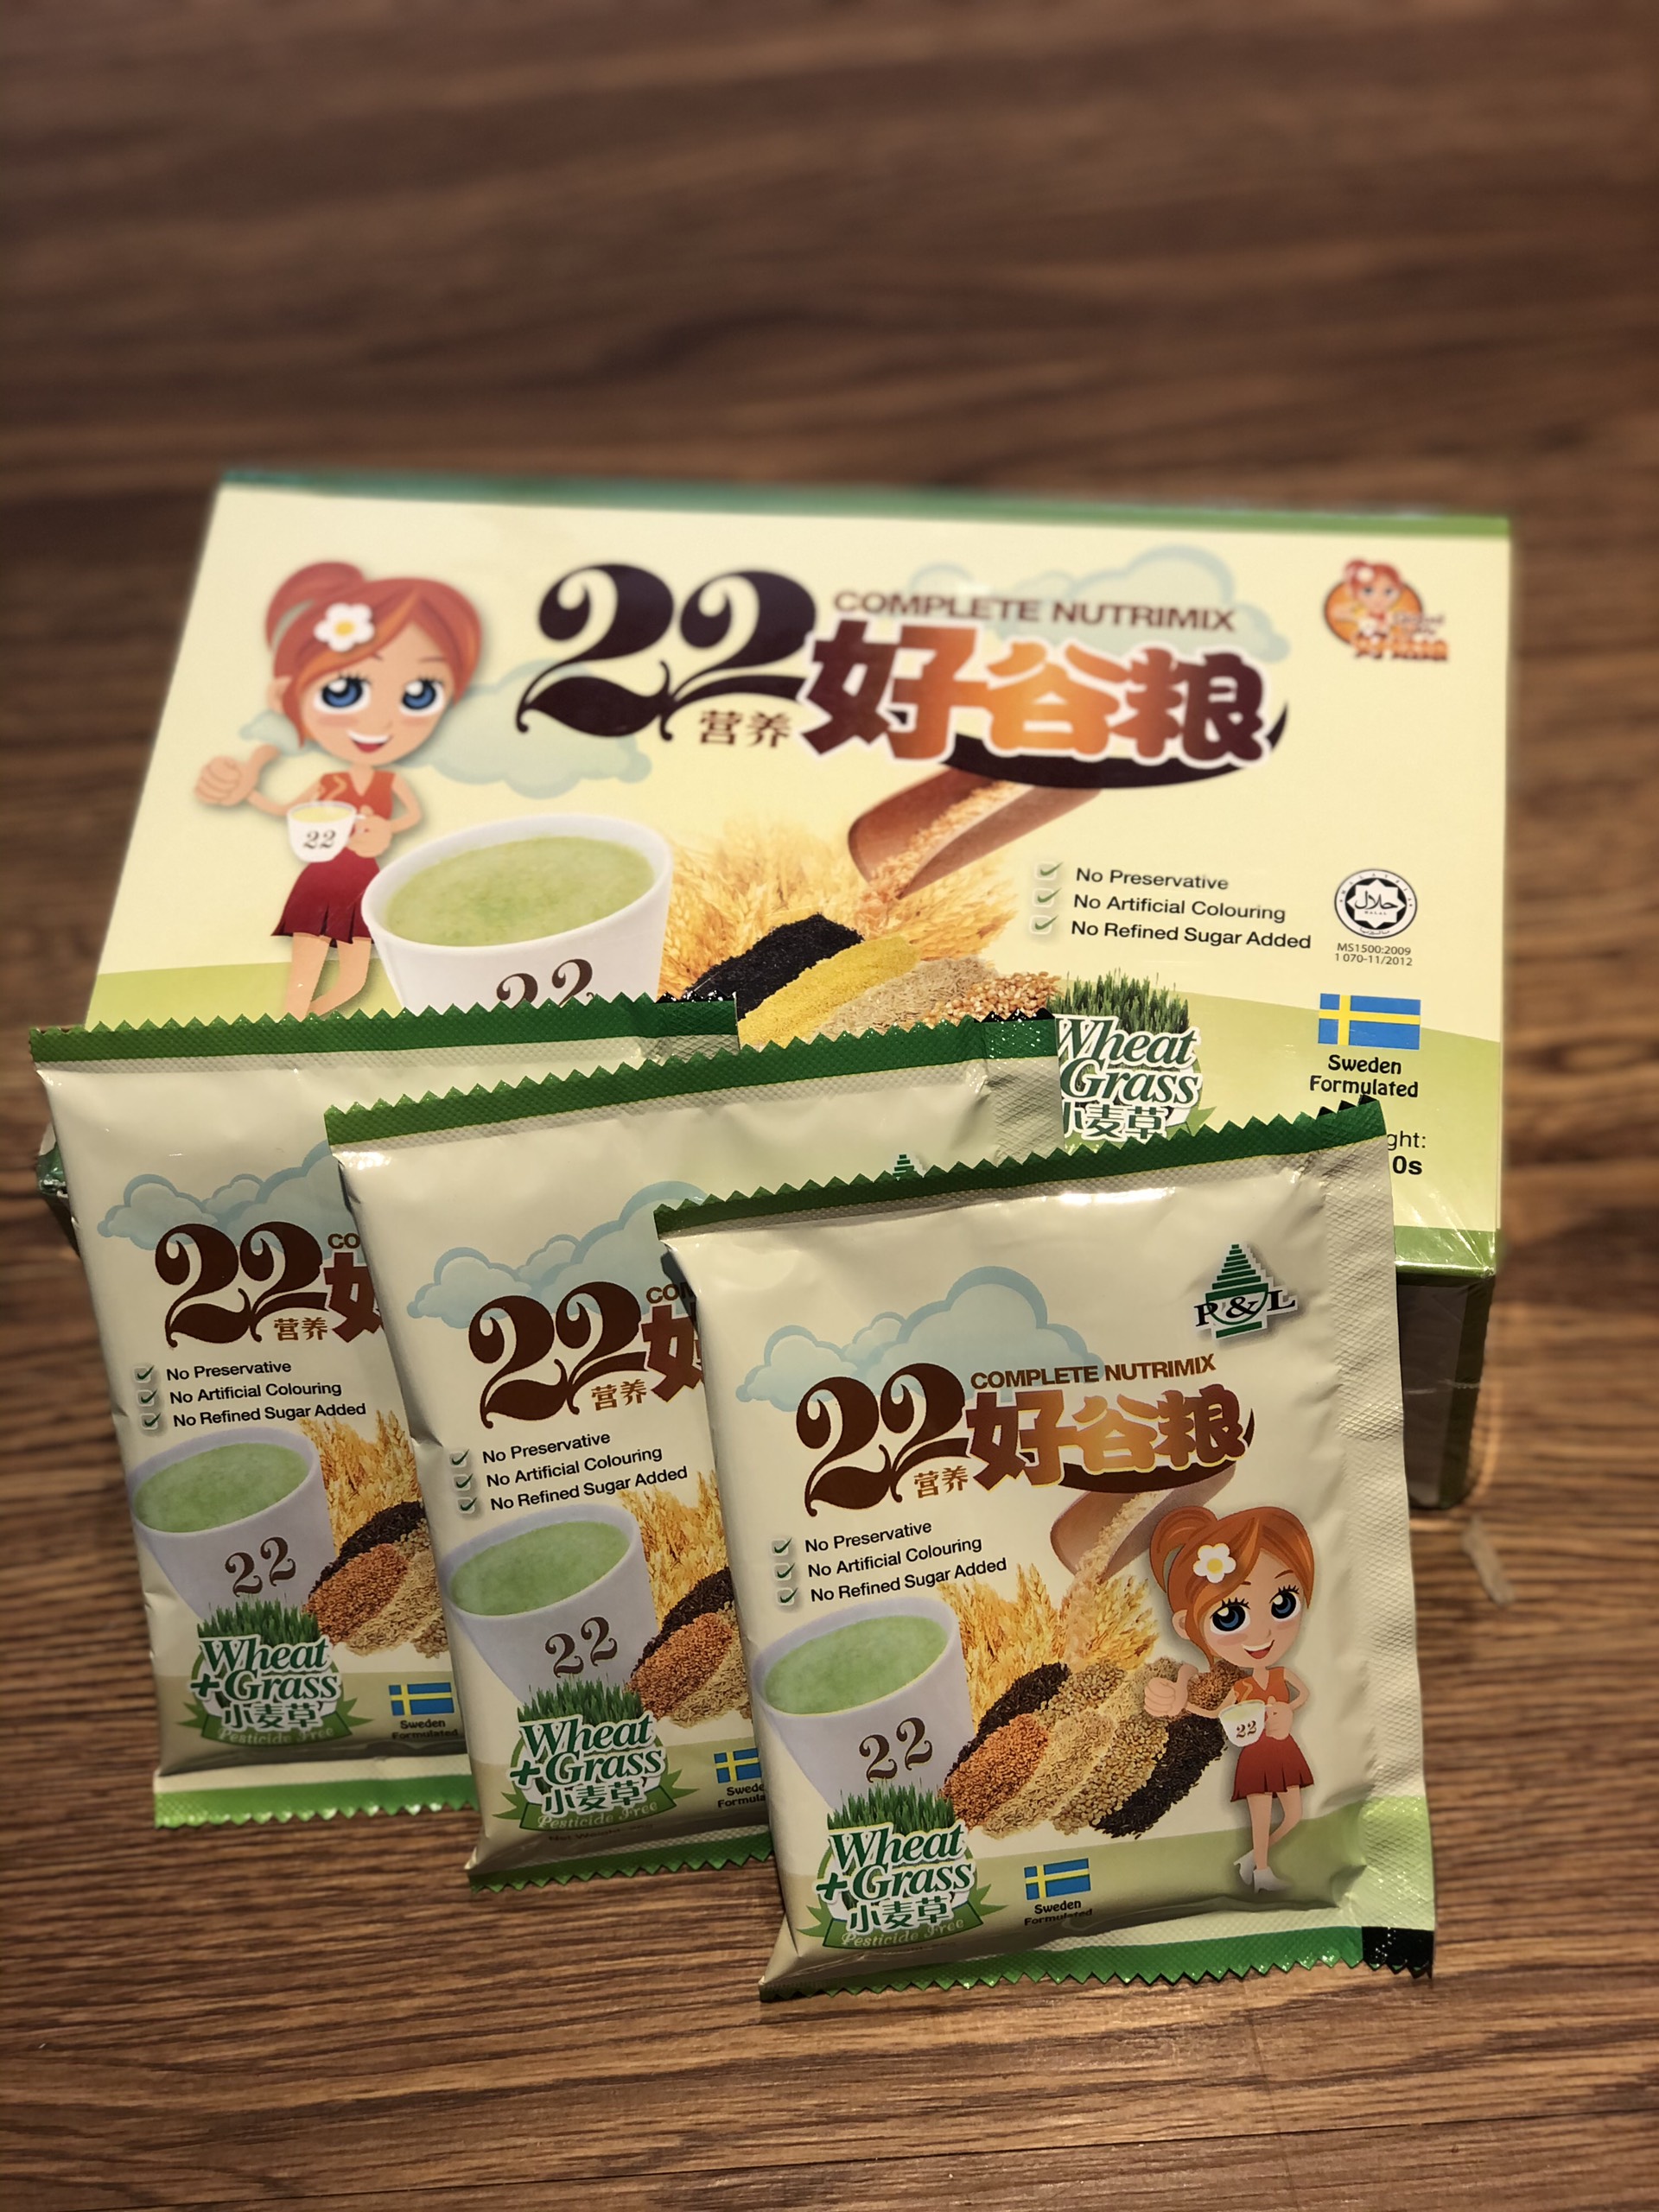 Bột ngũ cốc dinh dưỡng thương hiệu Good Lady Singapore - Mầm lúa mì - 22 Nutrimix Complete Wheat Grass (25 gói/ 625g)